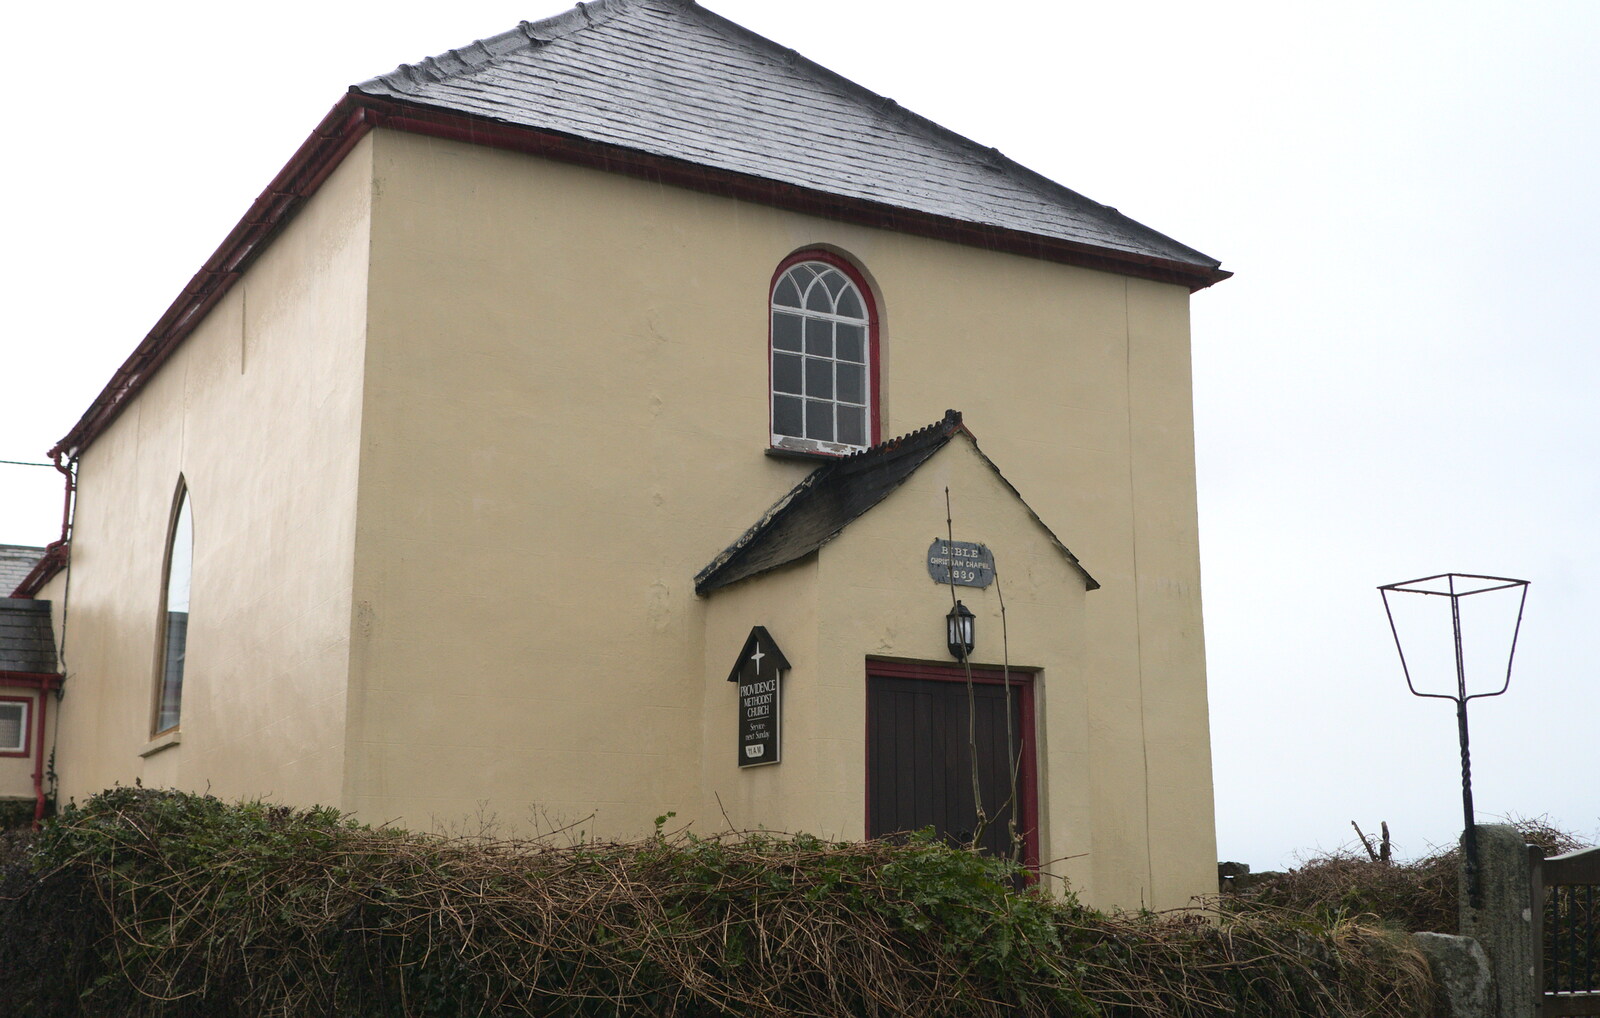 Providence chapel from A Trip to Grandma J's, Spreyton, Devon - 18th February 2015